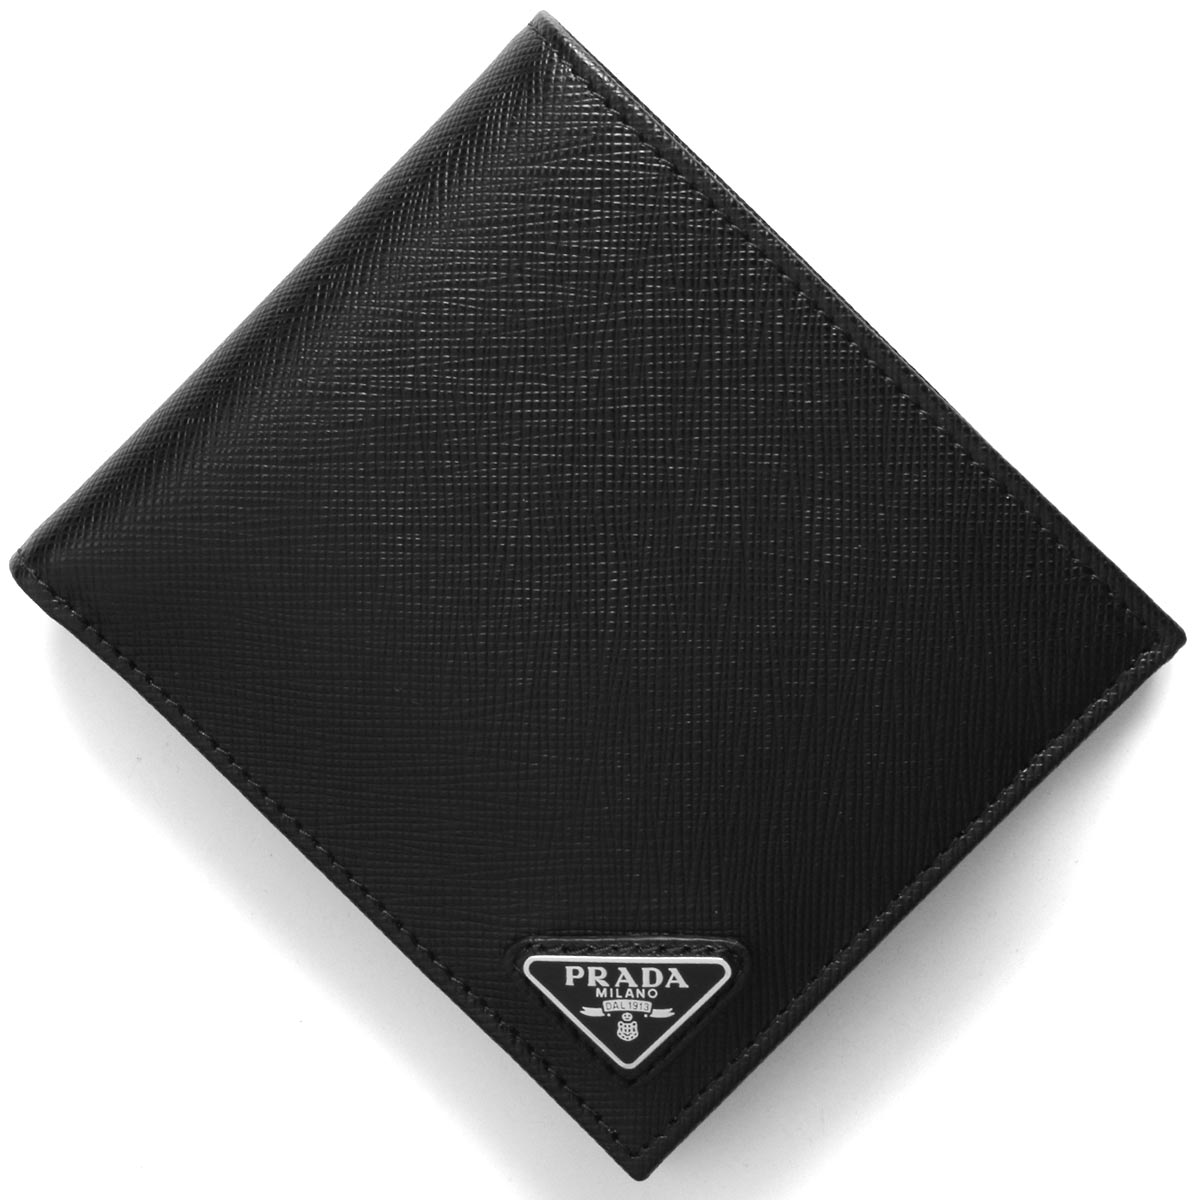 楽天市場 プラダ 二つ折り財布 財布 メンズ Saffiano Triang ブラック 2mo738 Qhh F0002 Prada ブルークウォッチカンパニー